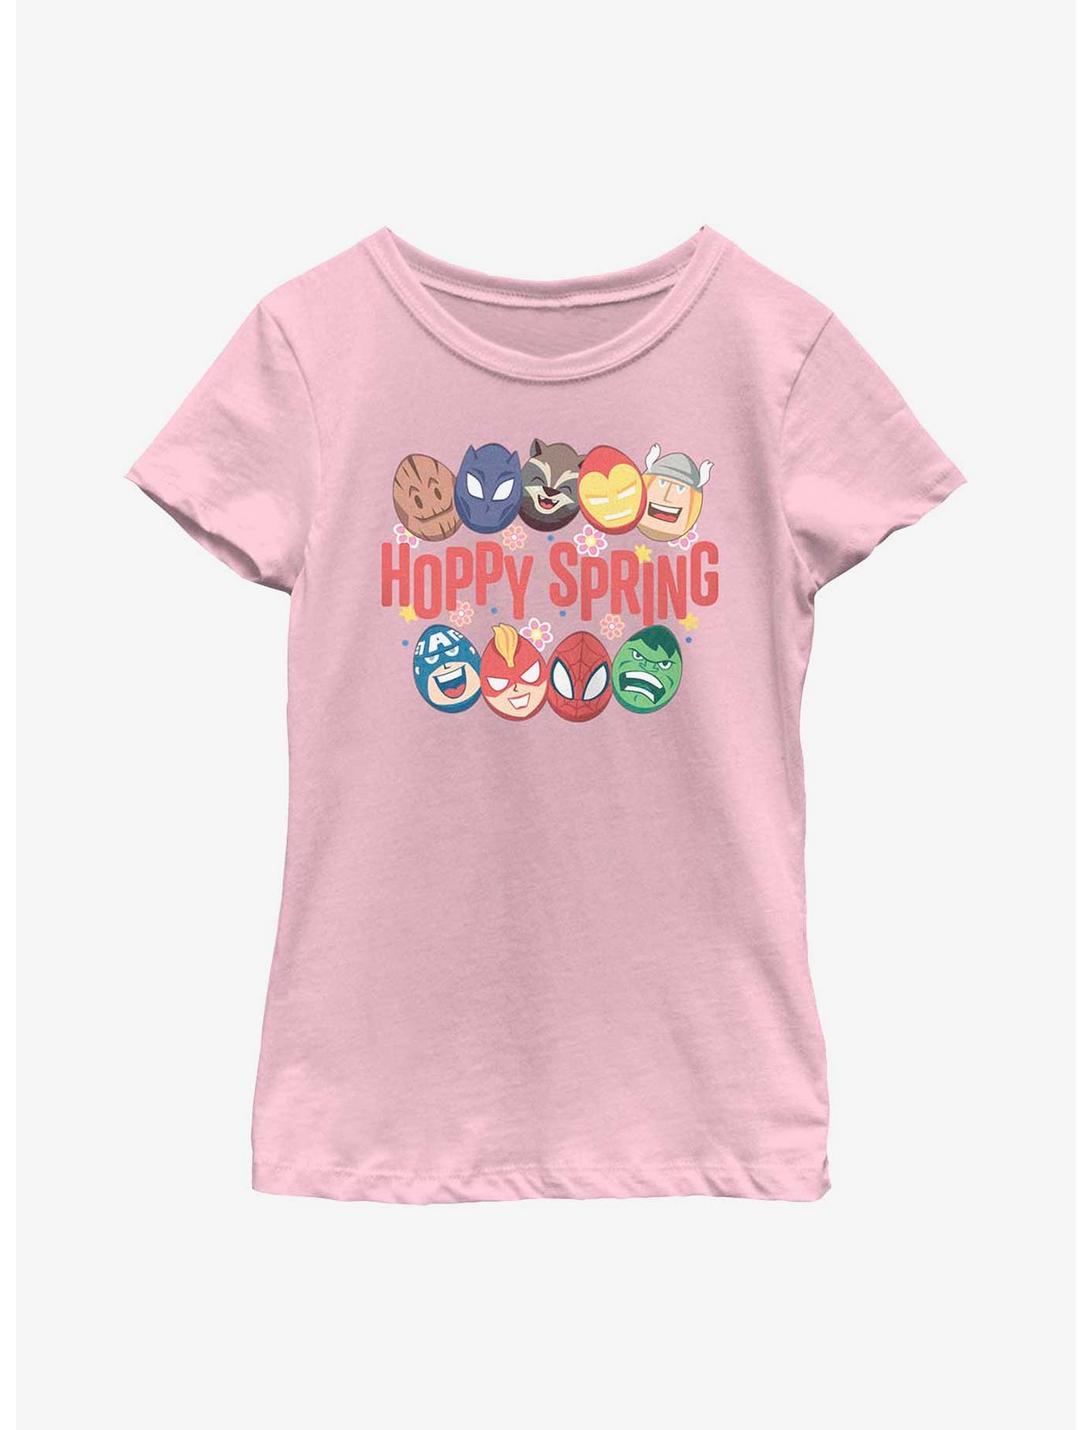 Marvel Avengers Easter Hoppy Spring Youth Girls T-Shirt, PINK, hi-res